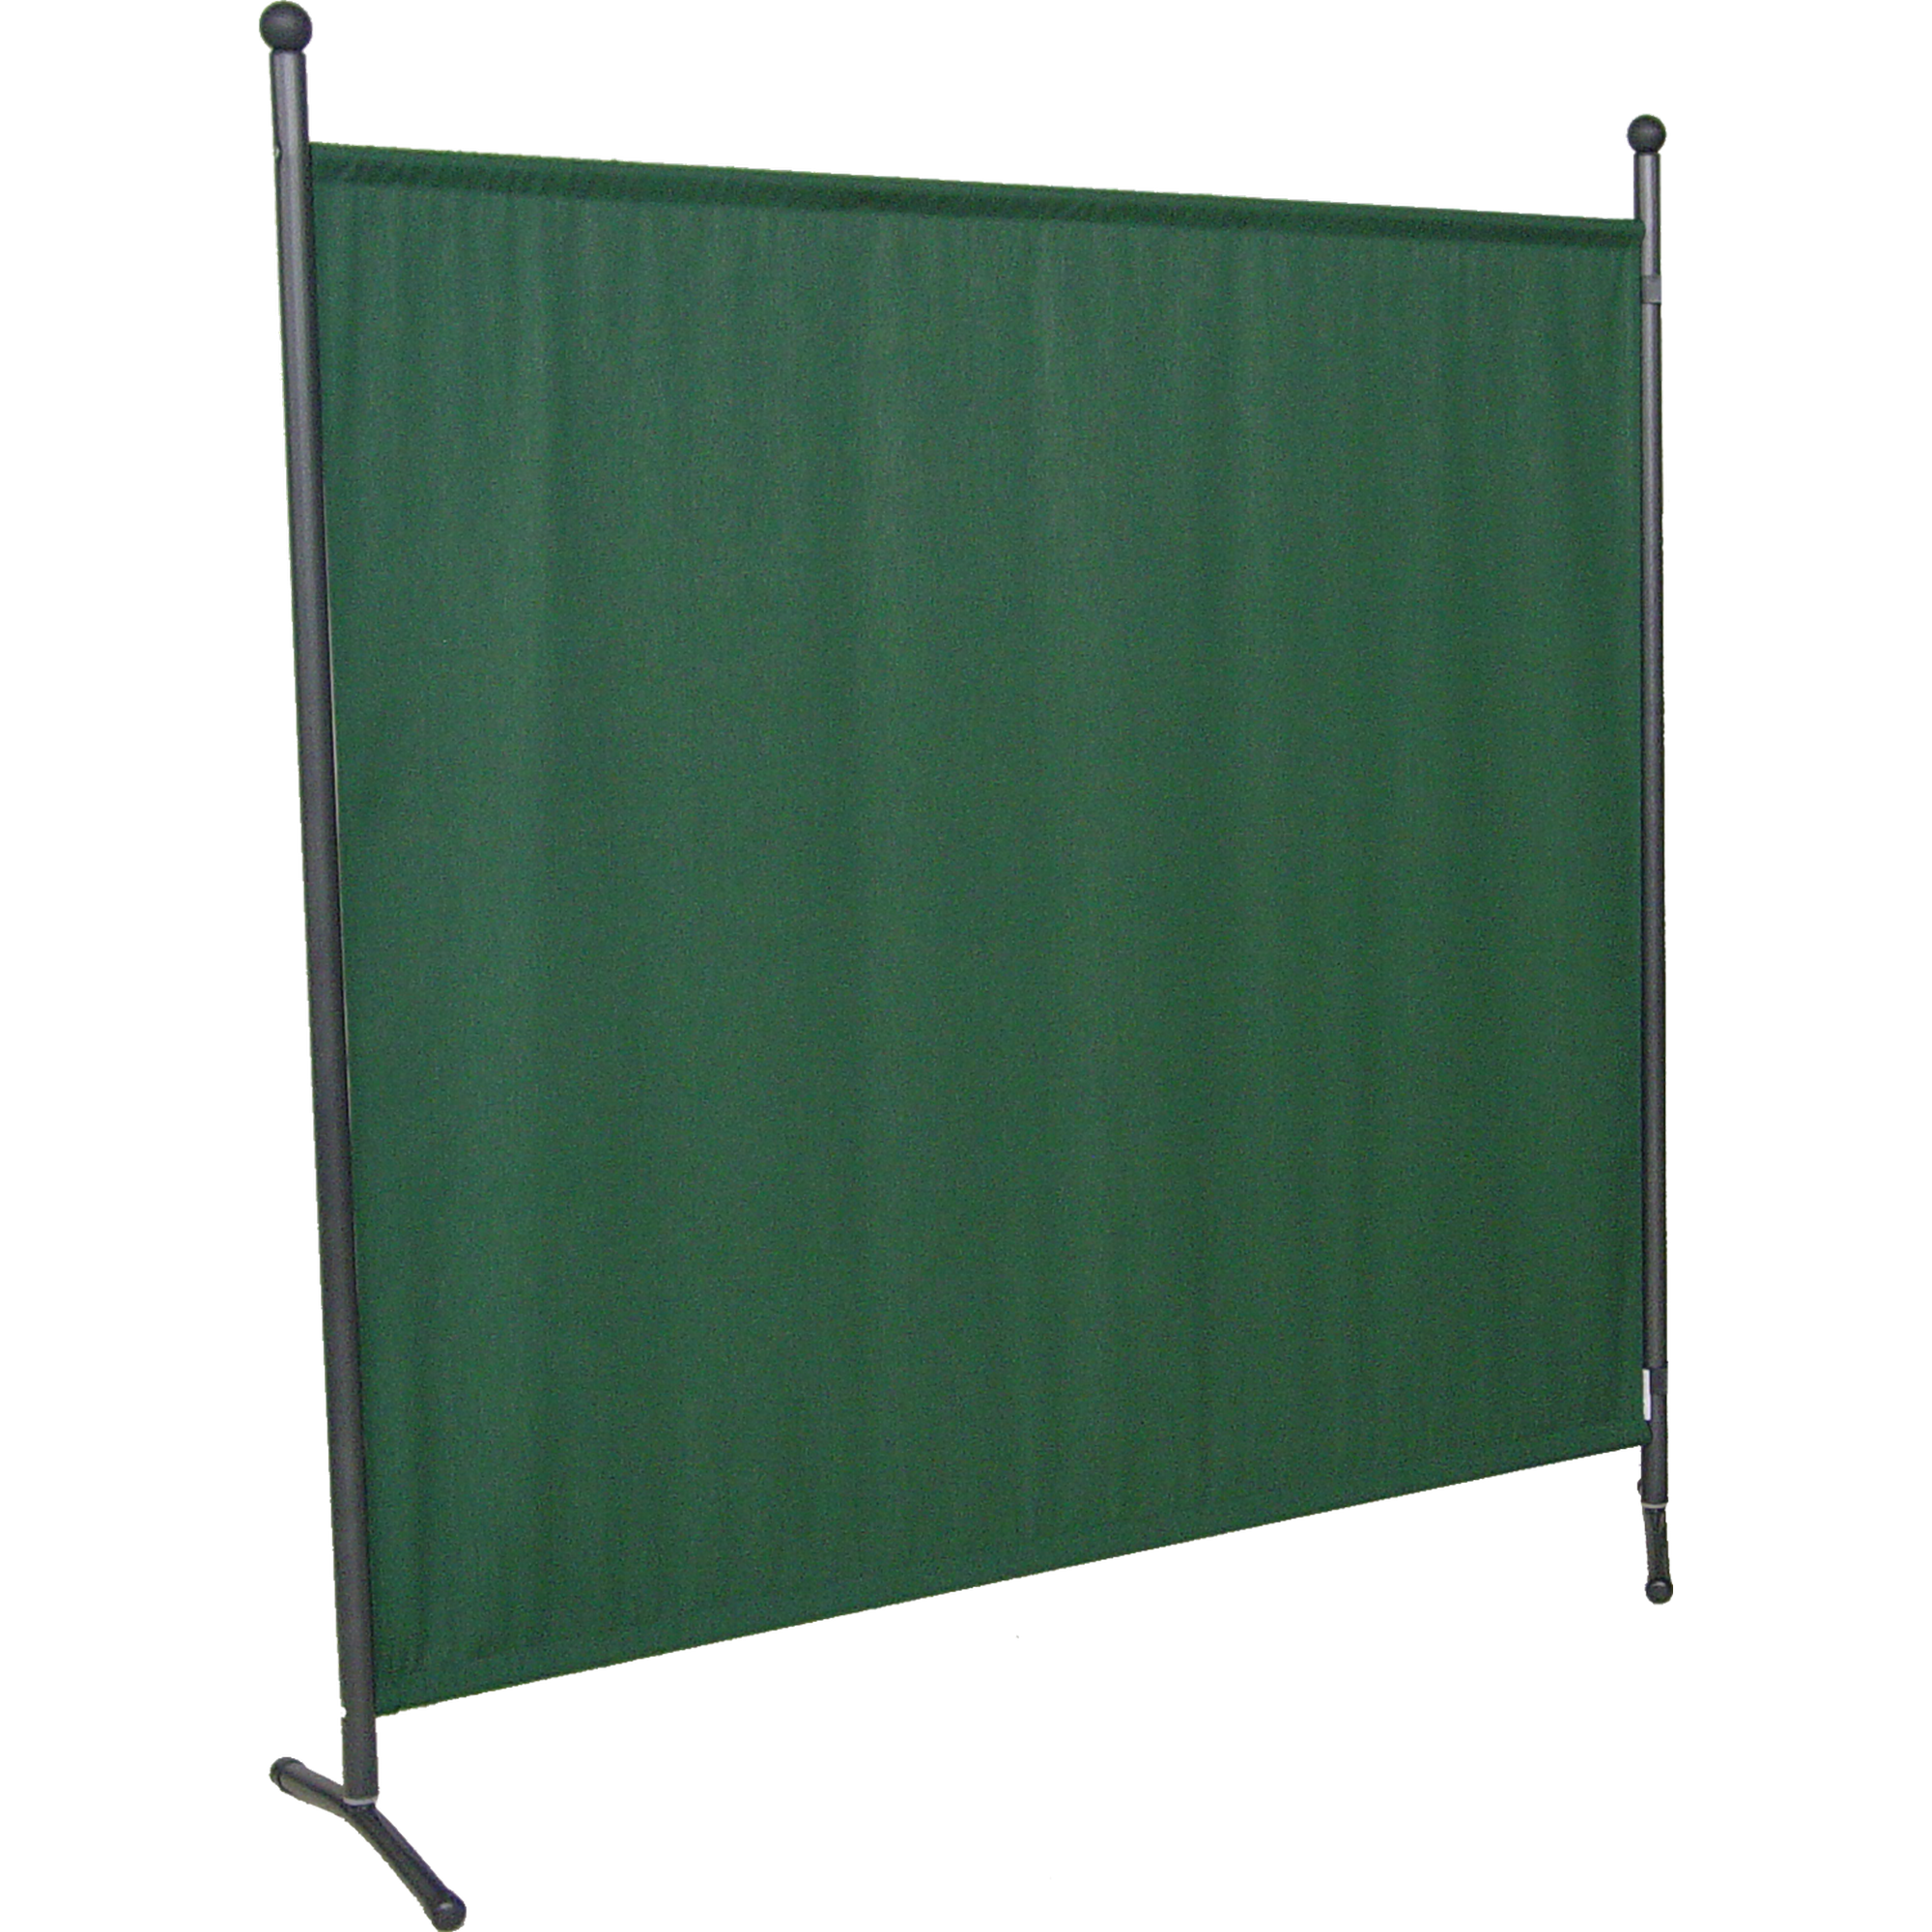 Sichtschutz Stellwand 'Swingtex' grün 178 x 178 cm + product picture